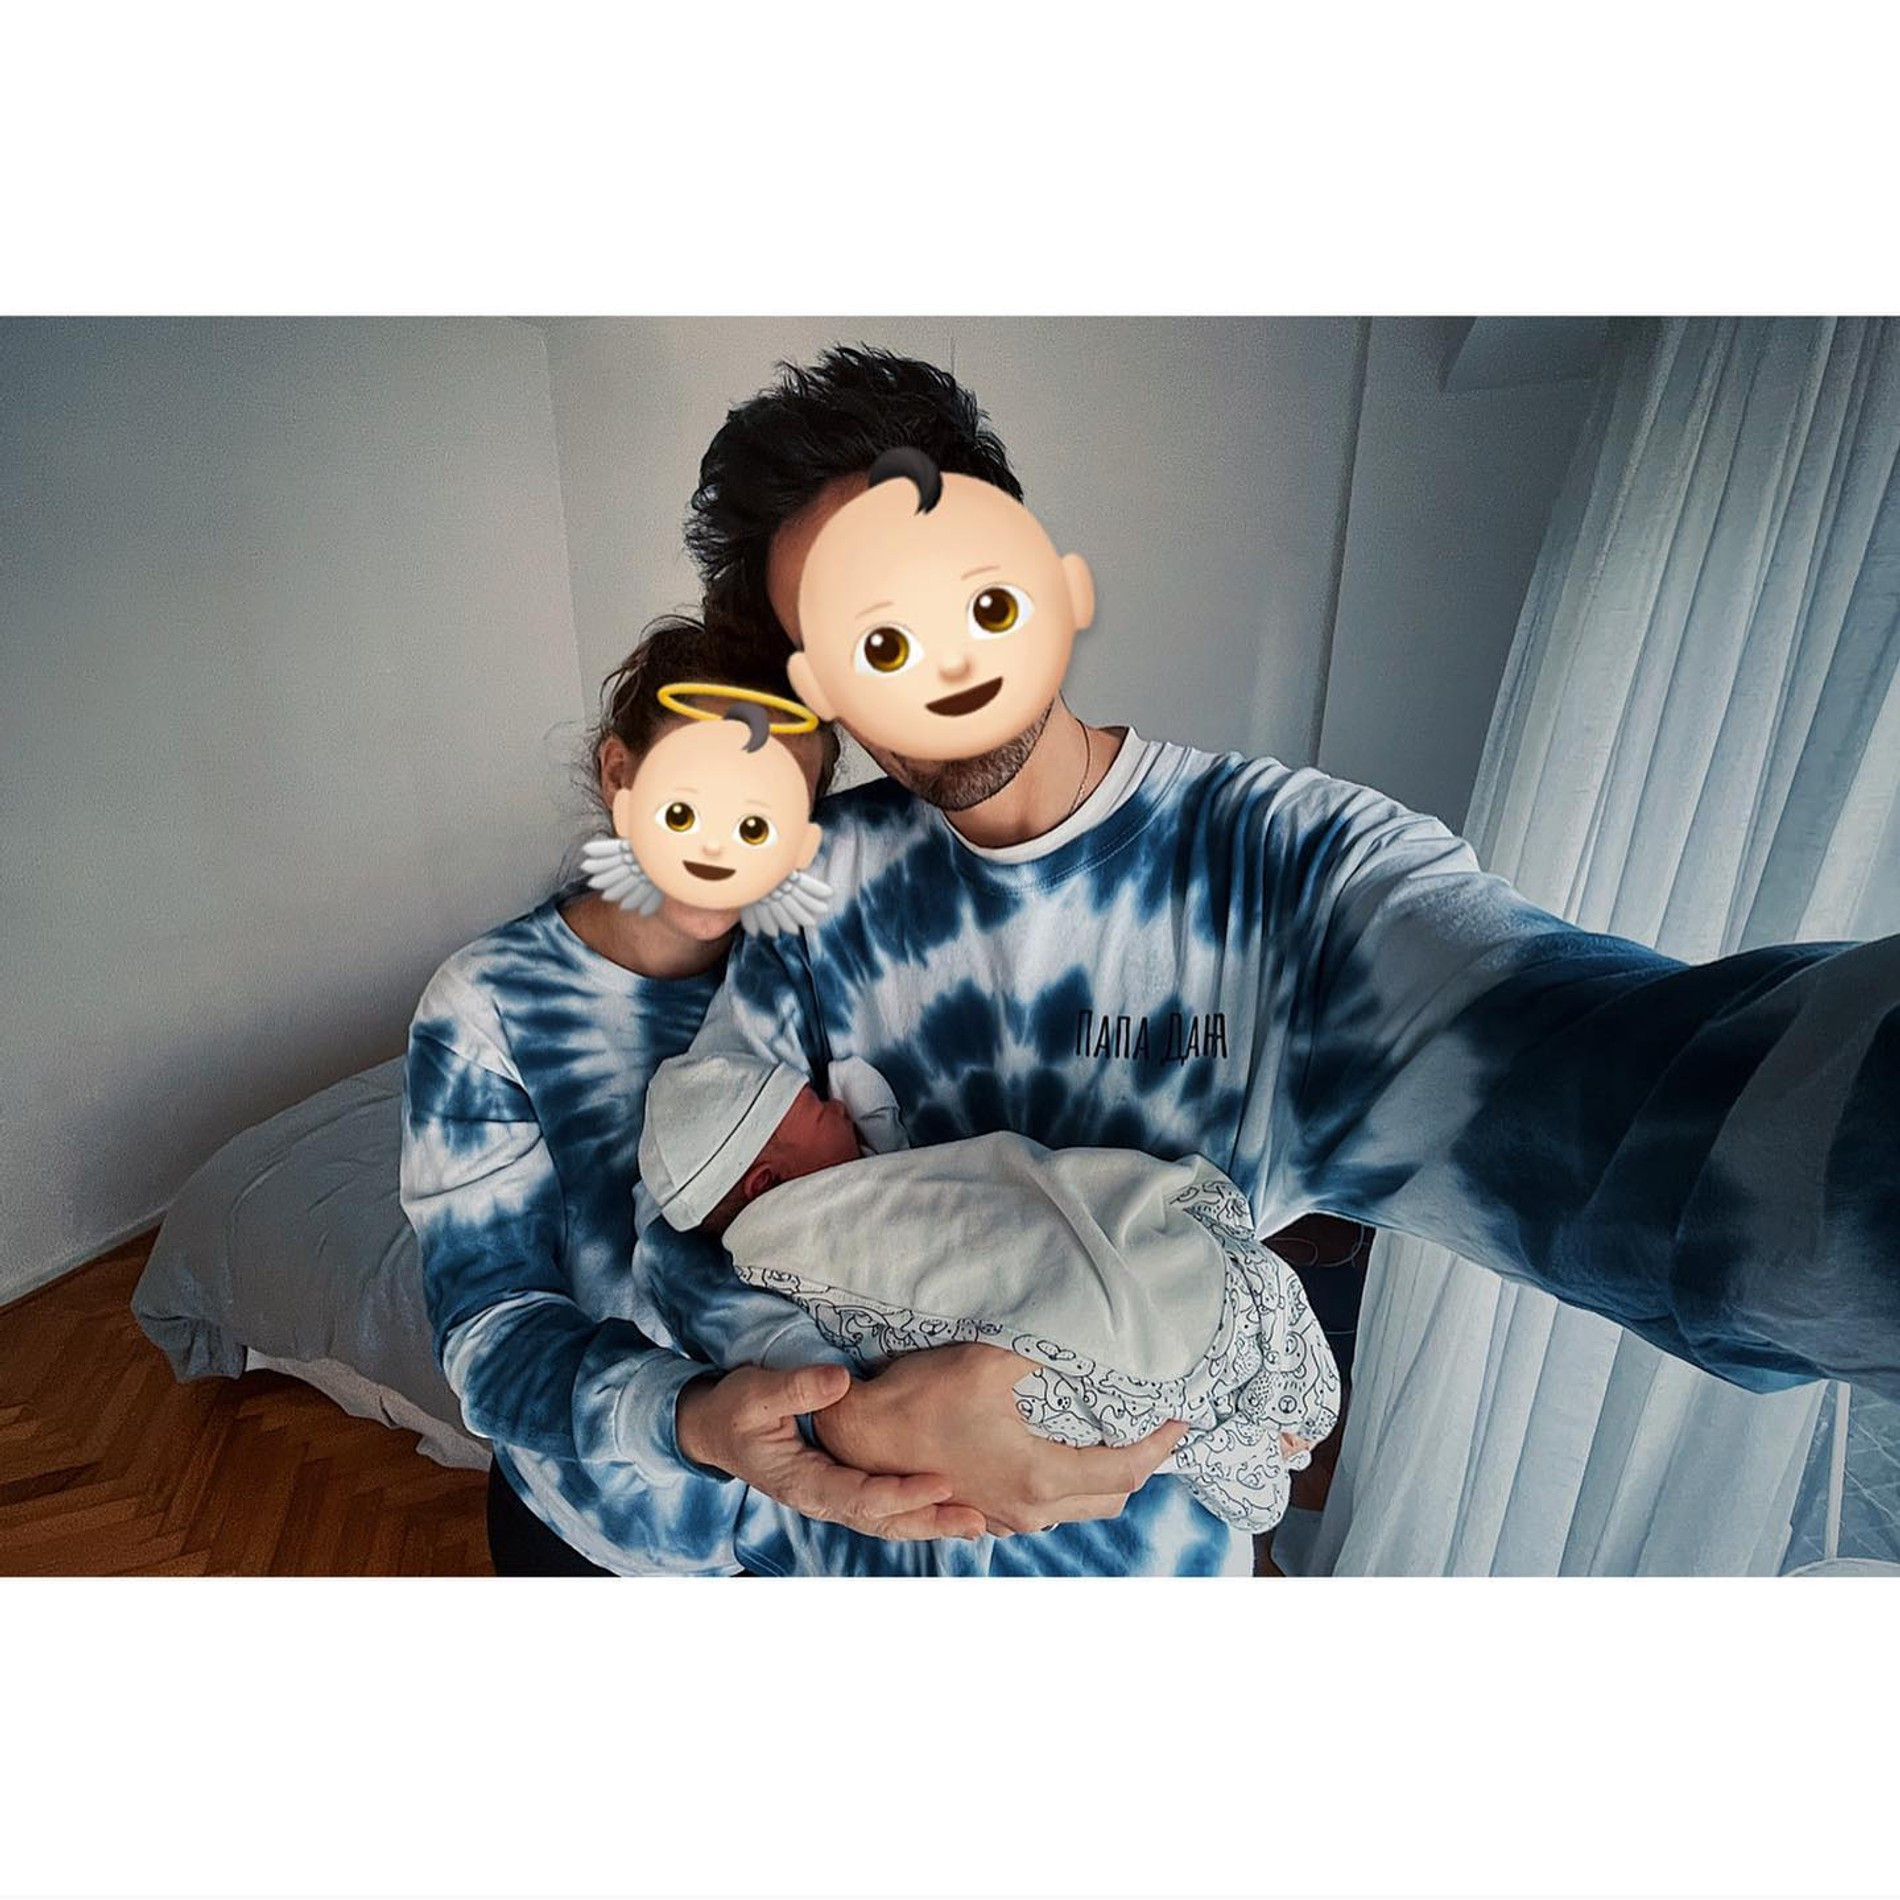 Варвара Шмыкова и Даниил Радлов с их новорожденным сыном
Фото: Инстаграм (запрещен в РФ) @dradlov